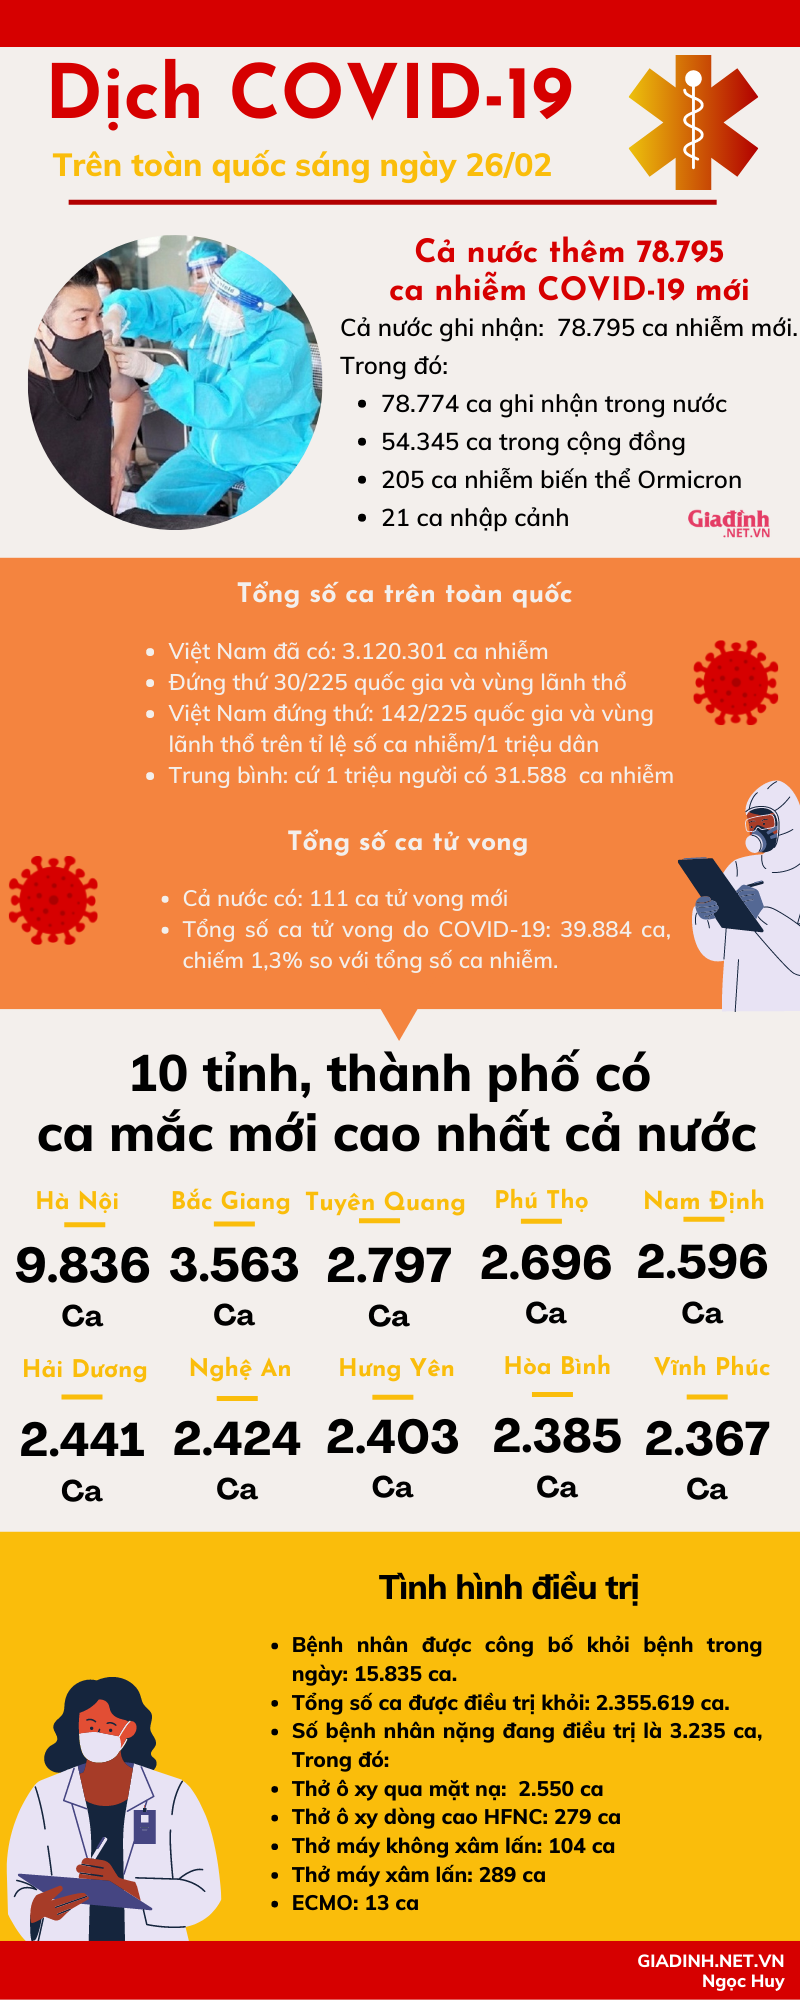 Sáng 26/02: Hà Nội có gần 10.000 ca nhiễm COVID-19 mới - Ảnh 1.